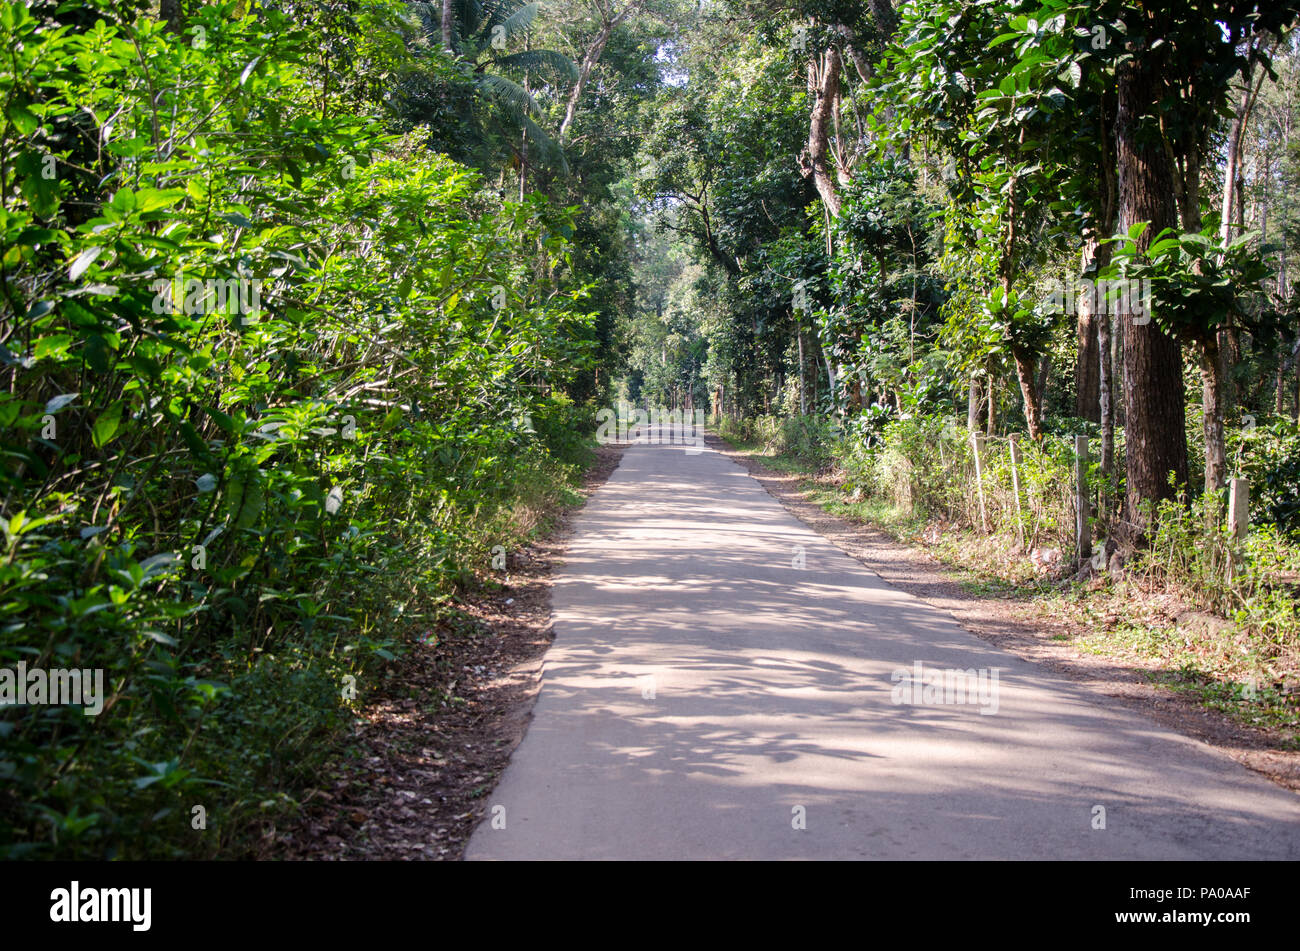 Beautiful road through plantation leading to Chiklihole Reservoir in Kushalnagar, Kodagu, Karnataka, India Stock Photo